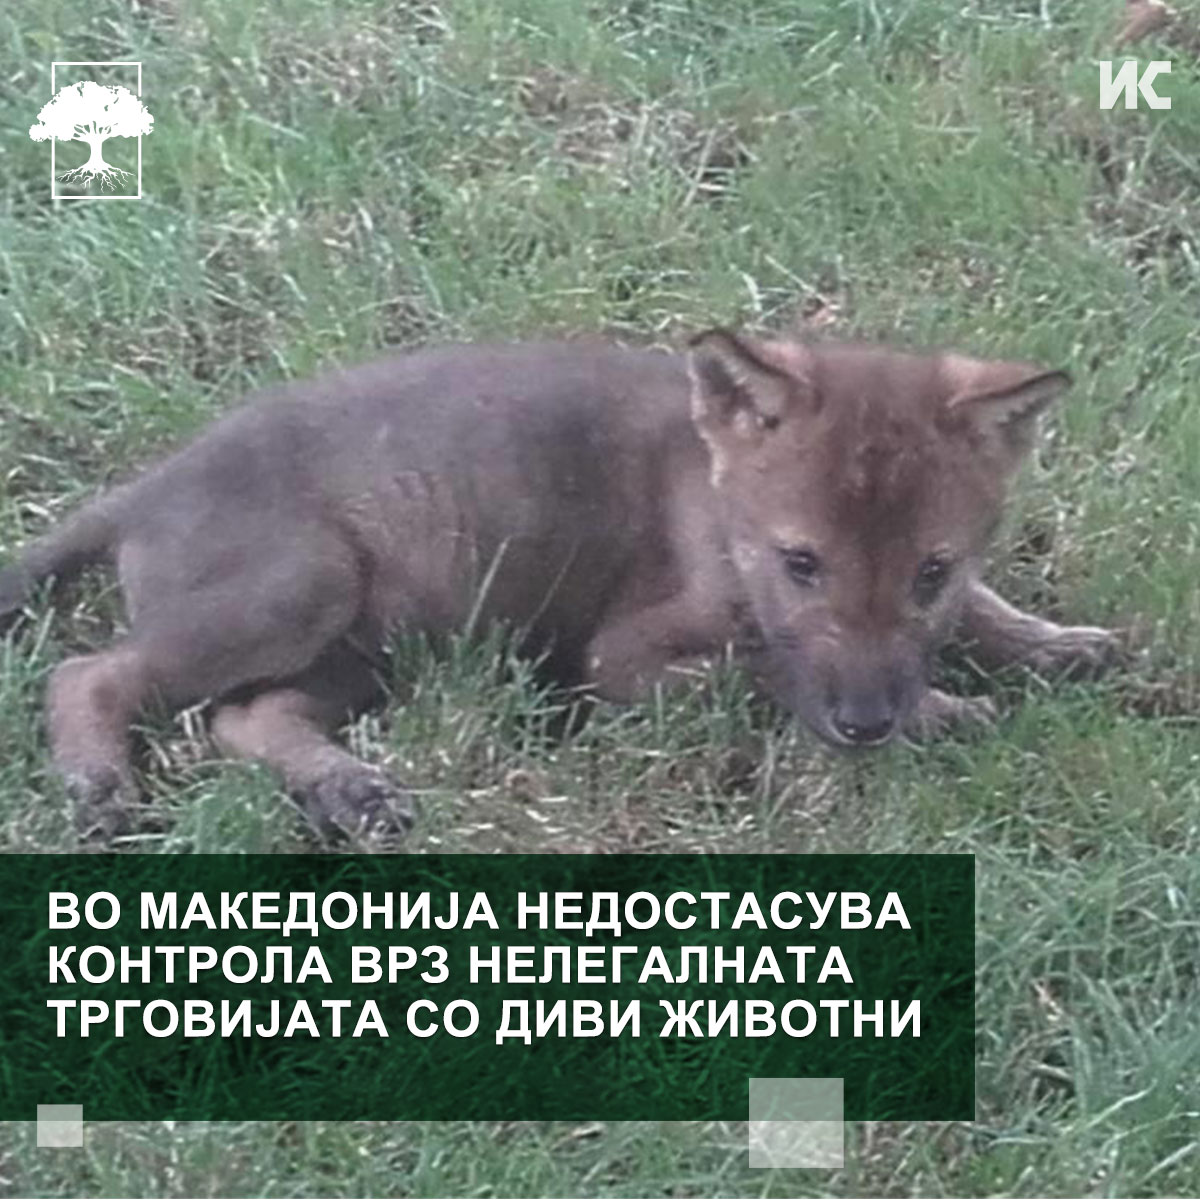 Фотографија од волк, на која пишува: Во Македонија недостасува контрола врз нелегалната трговијата со диви животни 